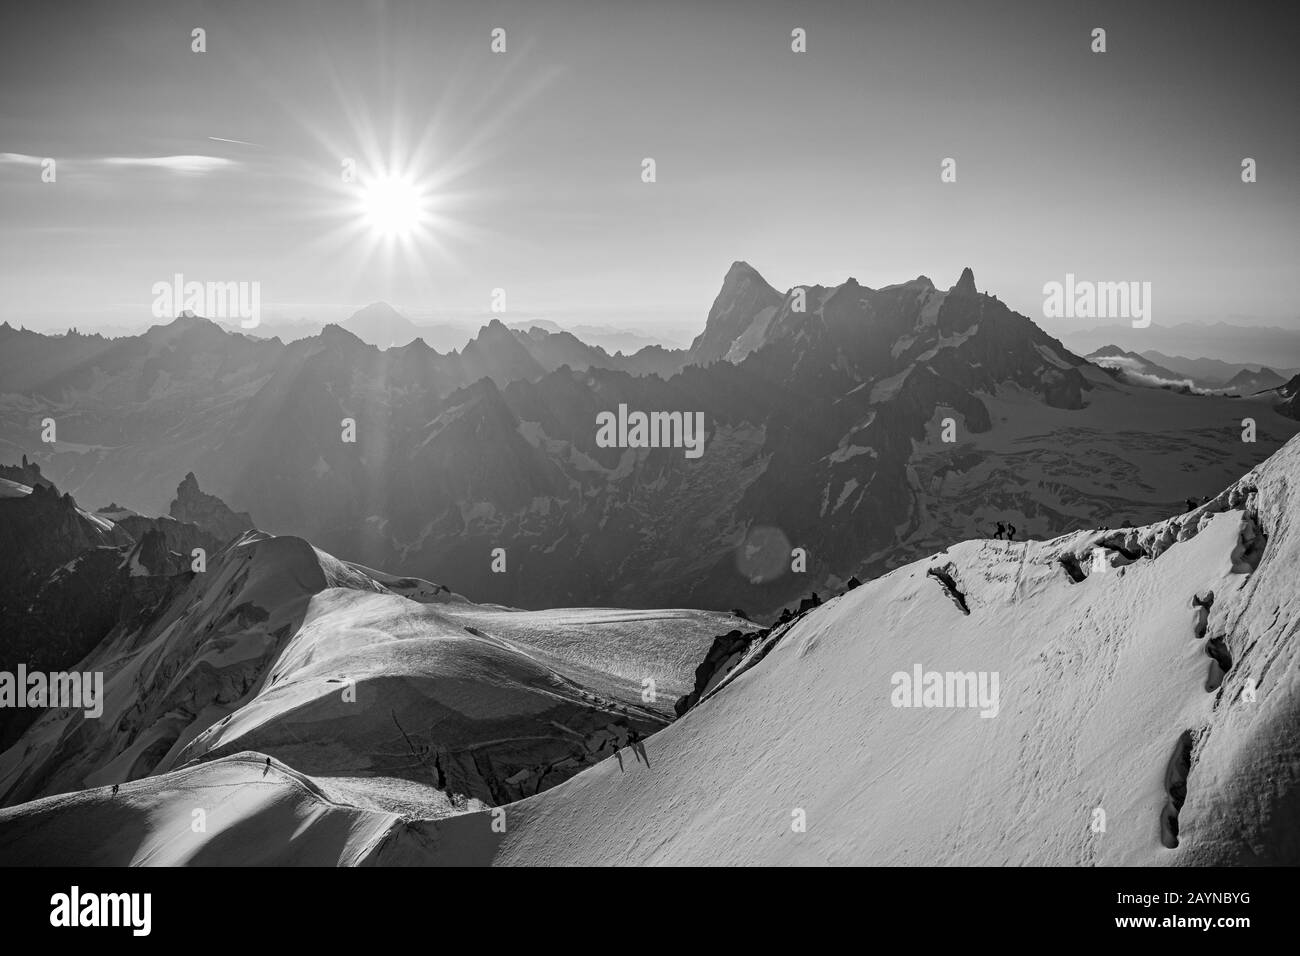 Vista panorámica en blanco y negro de los senderismo que suben al Mont Blanc en una mañana soleada desde la estación Aiguille du midi de Chamonix, Francia Foto de stock